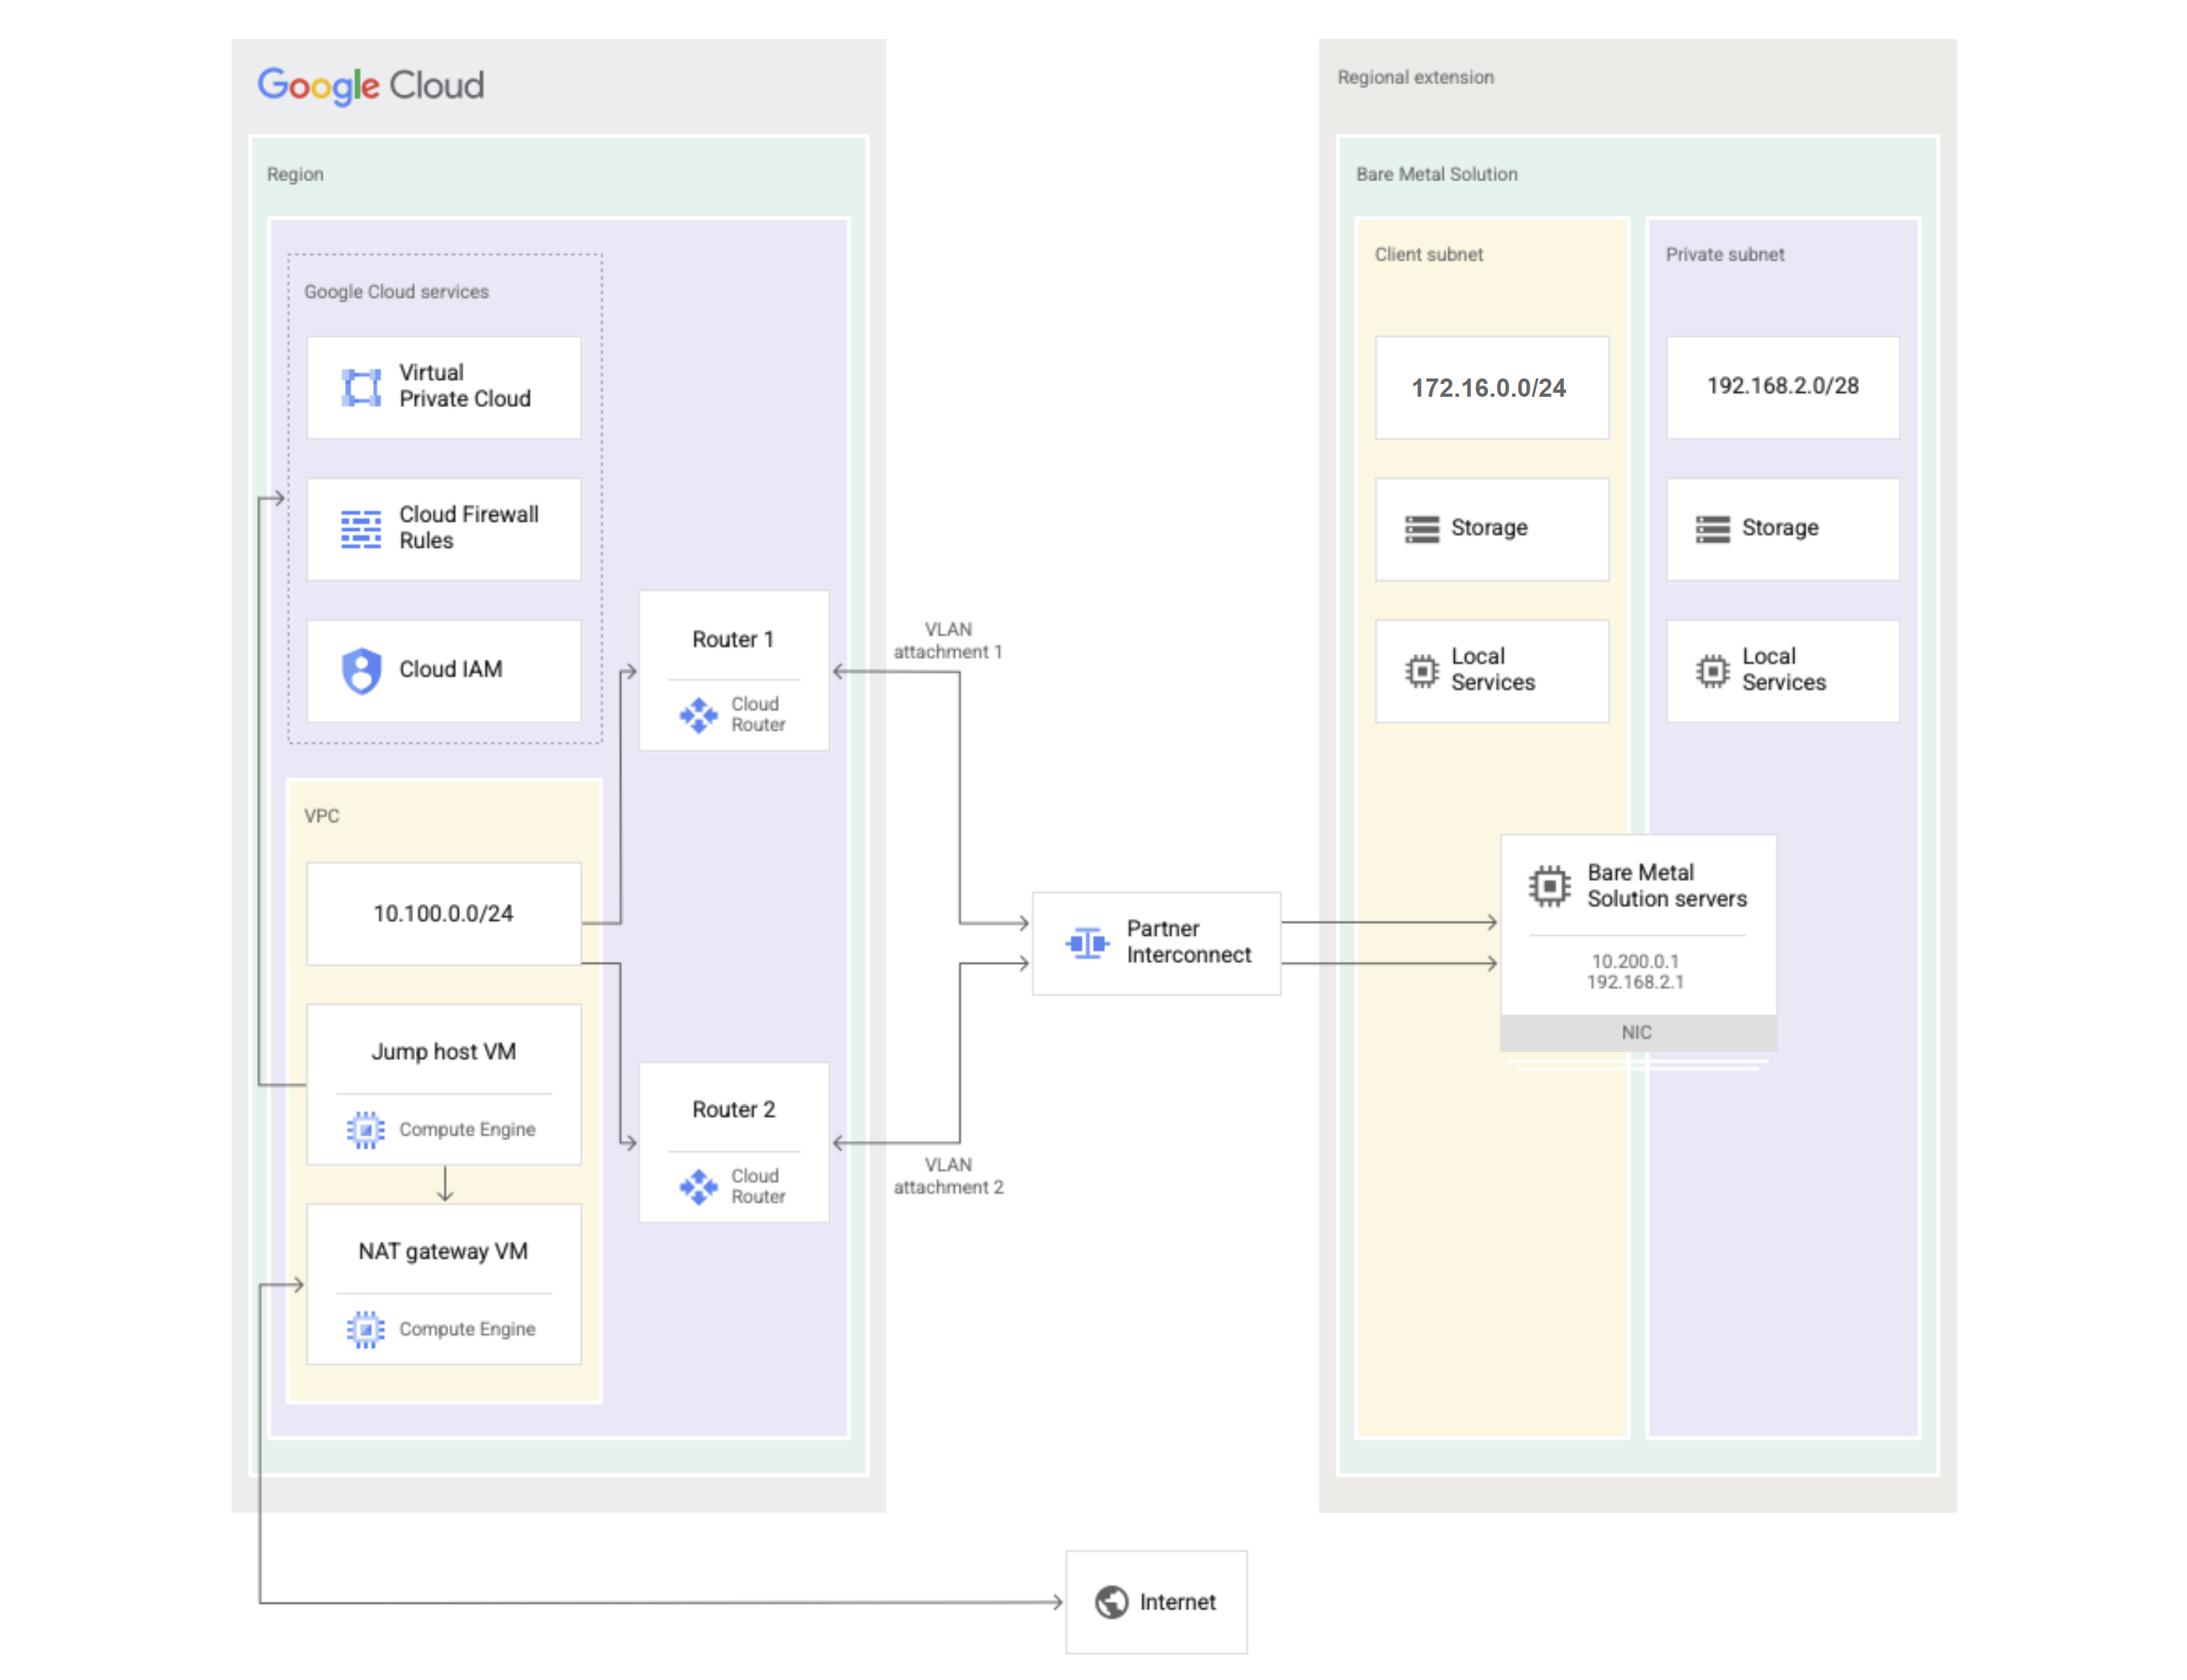 Schéma d'une solution Bare Metal présentant les composants qui se trouvent dans Google Cloud et ceux de l'extension régionale de la solution Bare Metal.